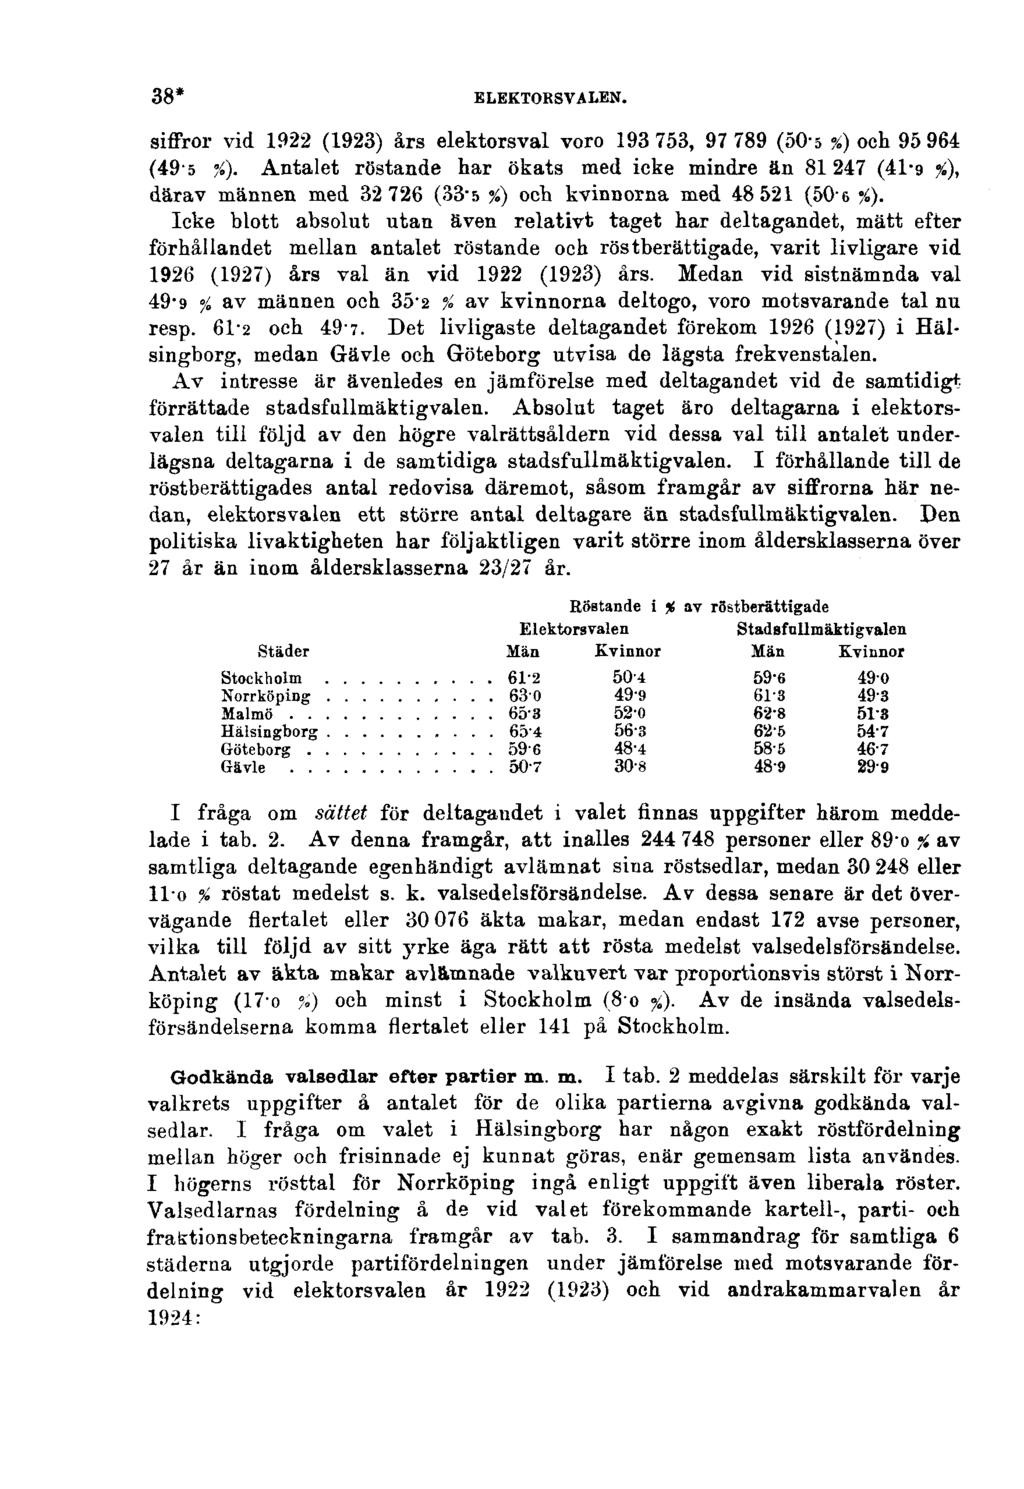 38* ELEKTORSVALEN. siffror vid 1922 (1923) års elektorsval voro 193 753, 97 789 (50-5 %) och 95 964 (49-5 %).